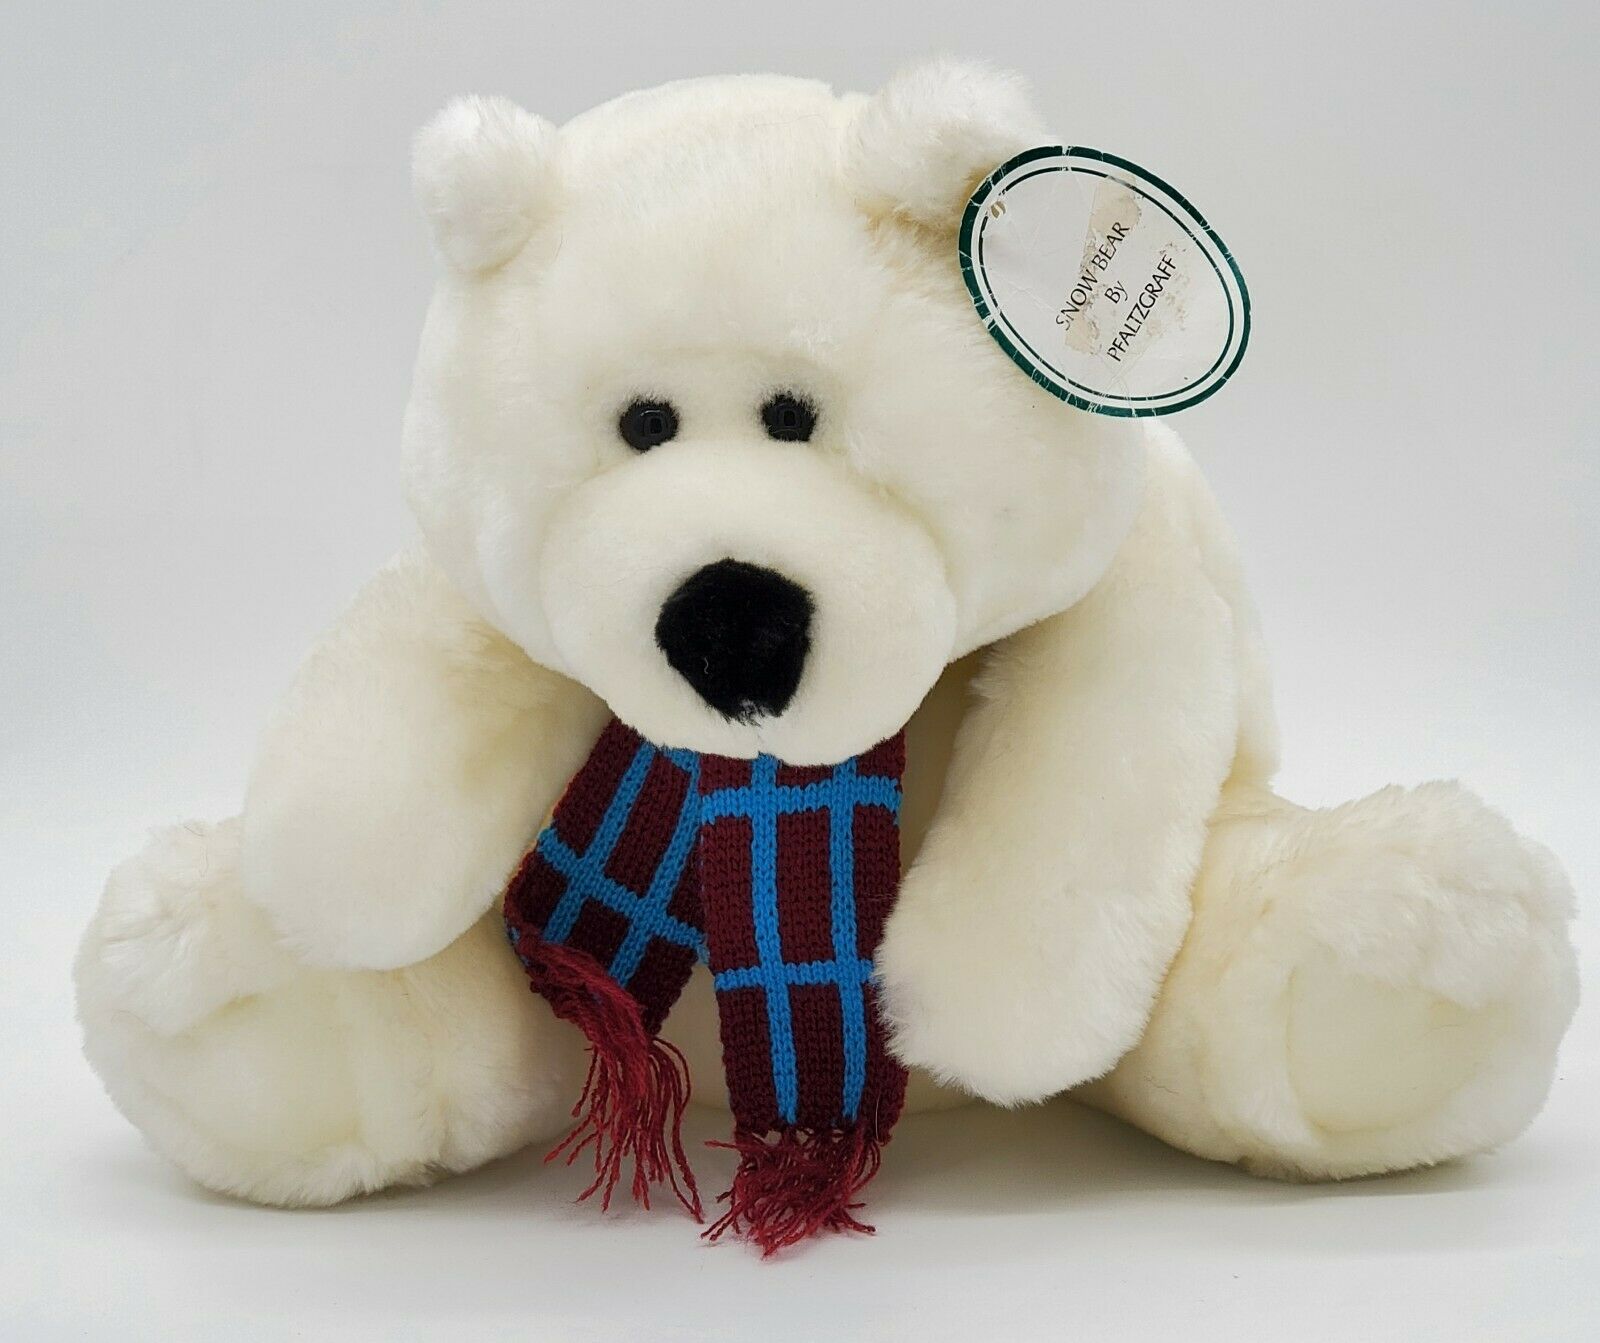 Vintage Snowbear By Pfaltzgraff 12" Stuffed Plush Bear Winter Holiday 2001 Nwt